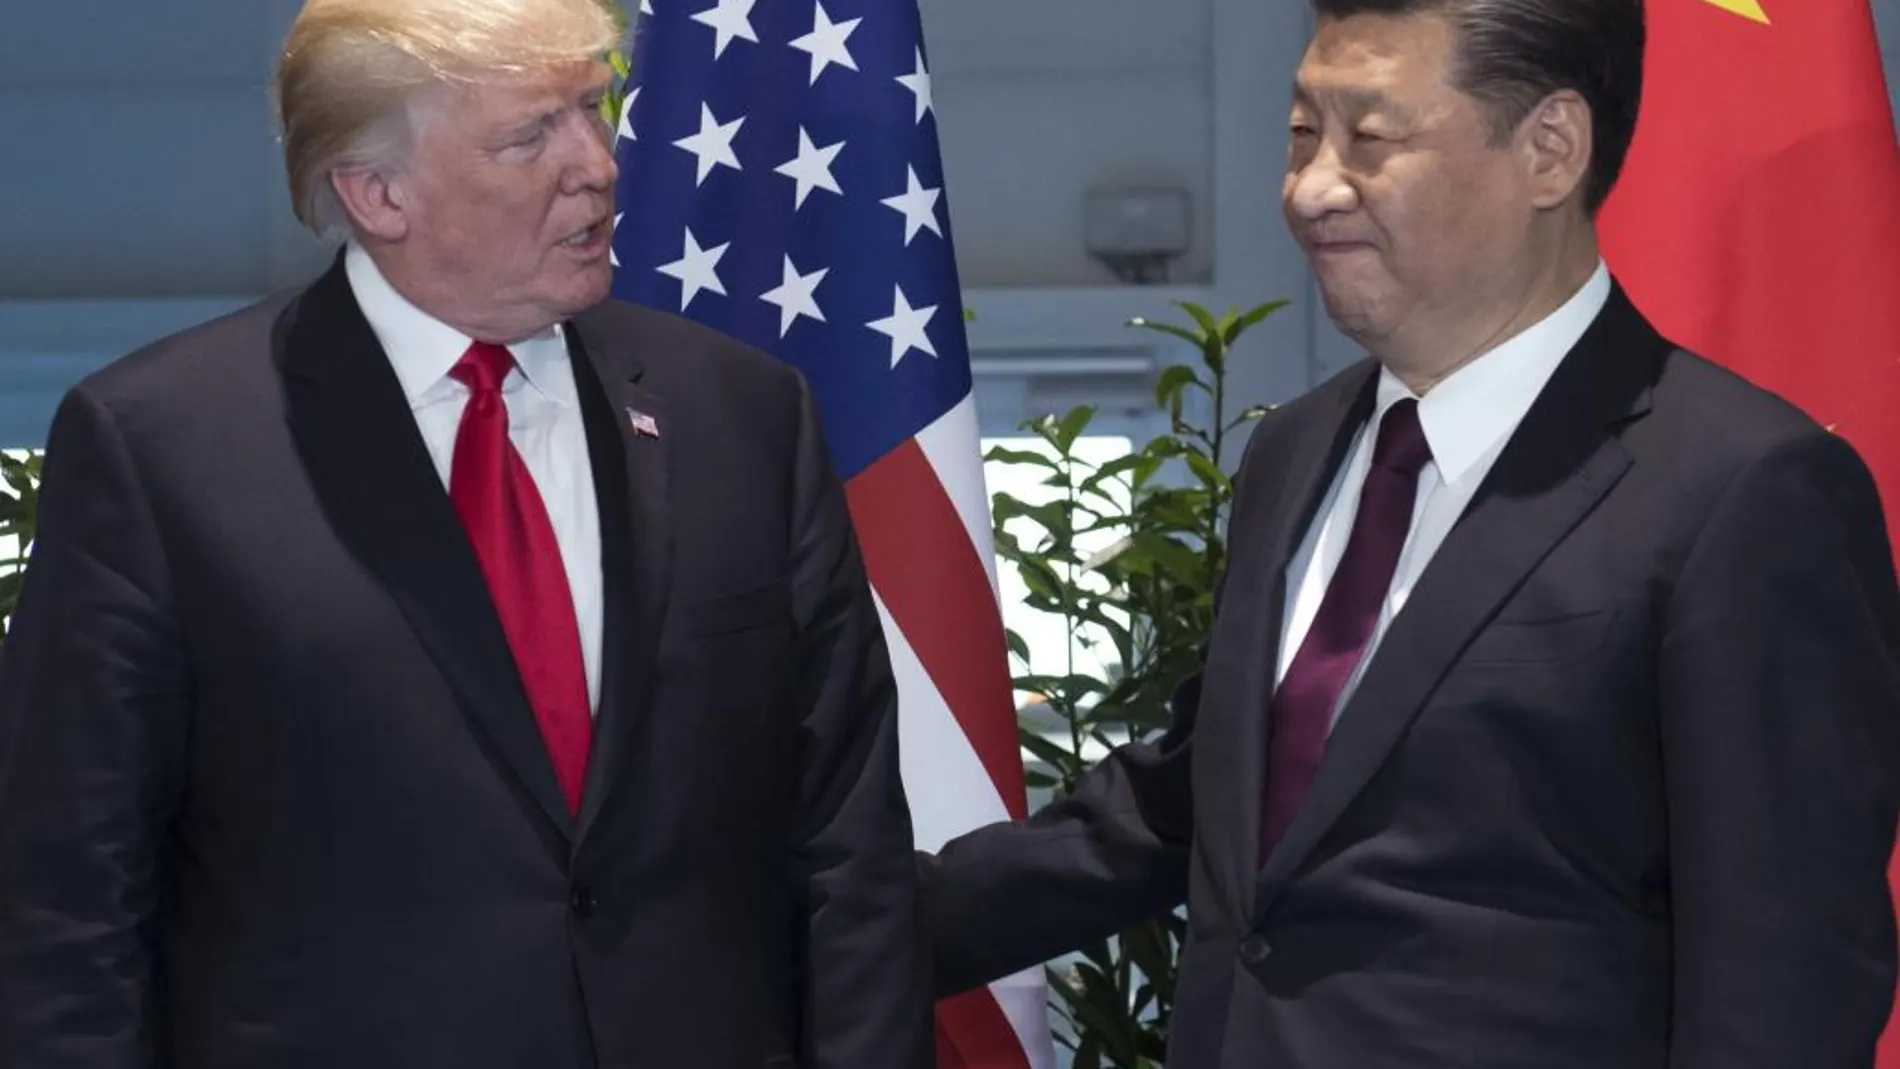 El presidente estadounidense, Donald Trump, l y su homólogo chino, Xi Jinping, el pasado mes de julio en la cumbre del G-20 en Hamburgo